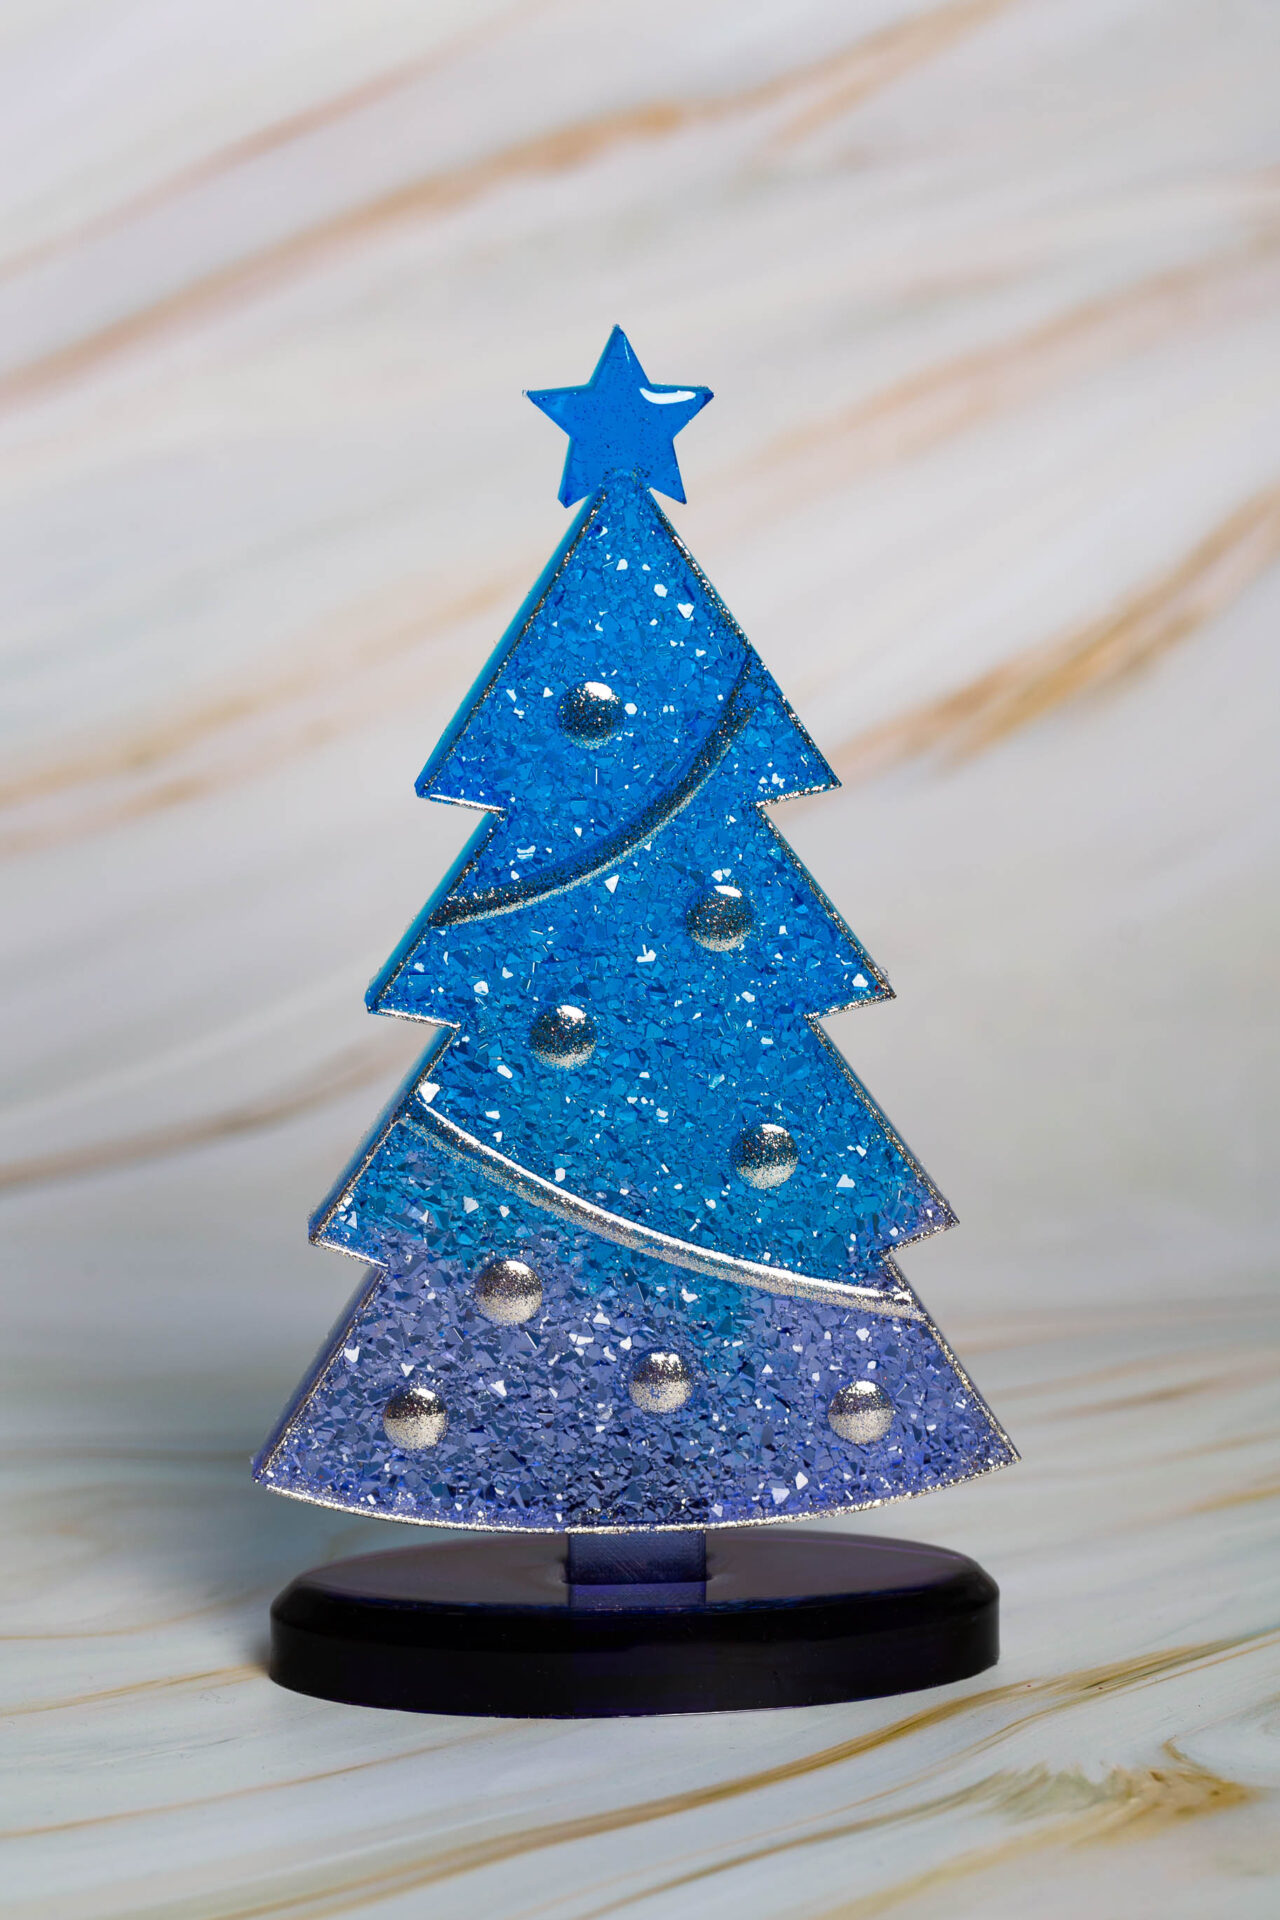 Décoration de Noël - Sapin de Noël à poser sur la table - Bleu mauve argenté - Boutique en ligne d'idées cadeaux et de décoration pour la fête des mères, la fêtes des pères ou pour un anniversaire enfant ou adulte, pour les fêtes de Noël ou pour tout autre occasion